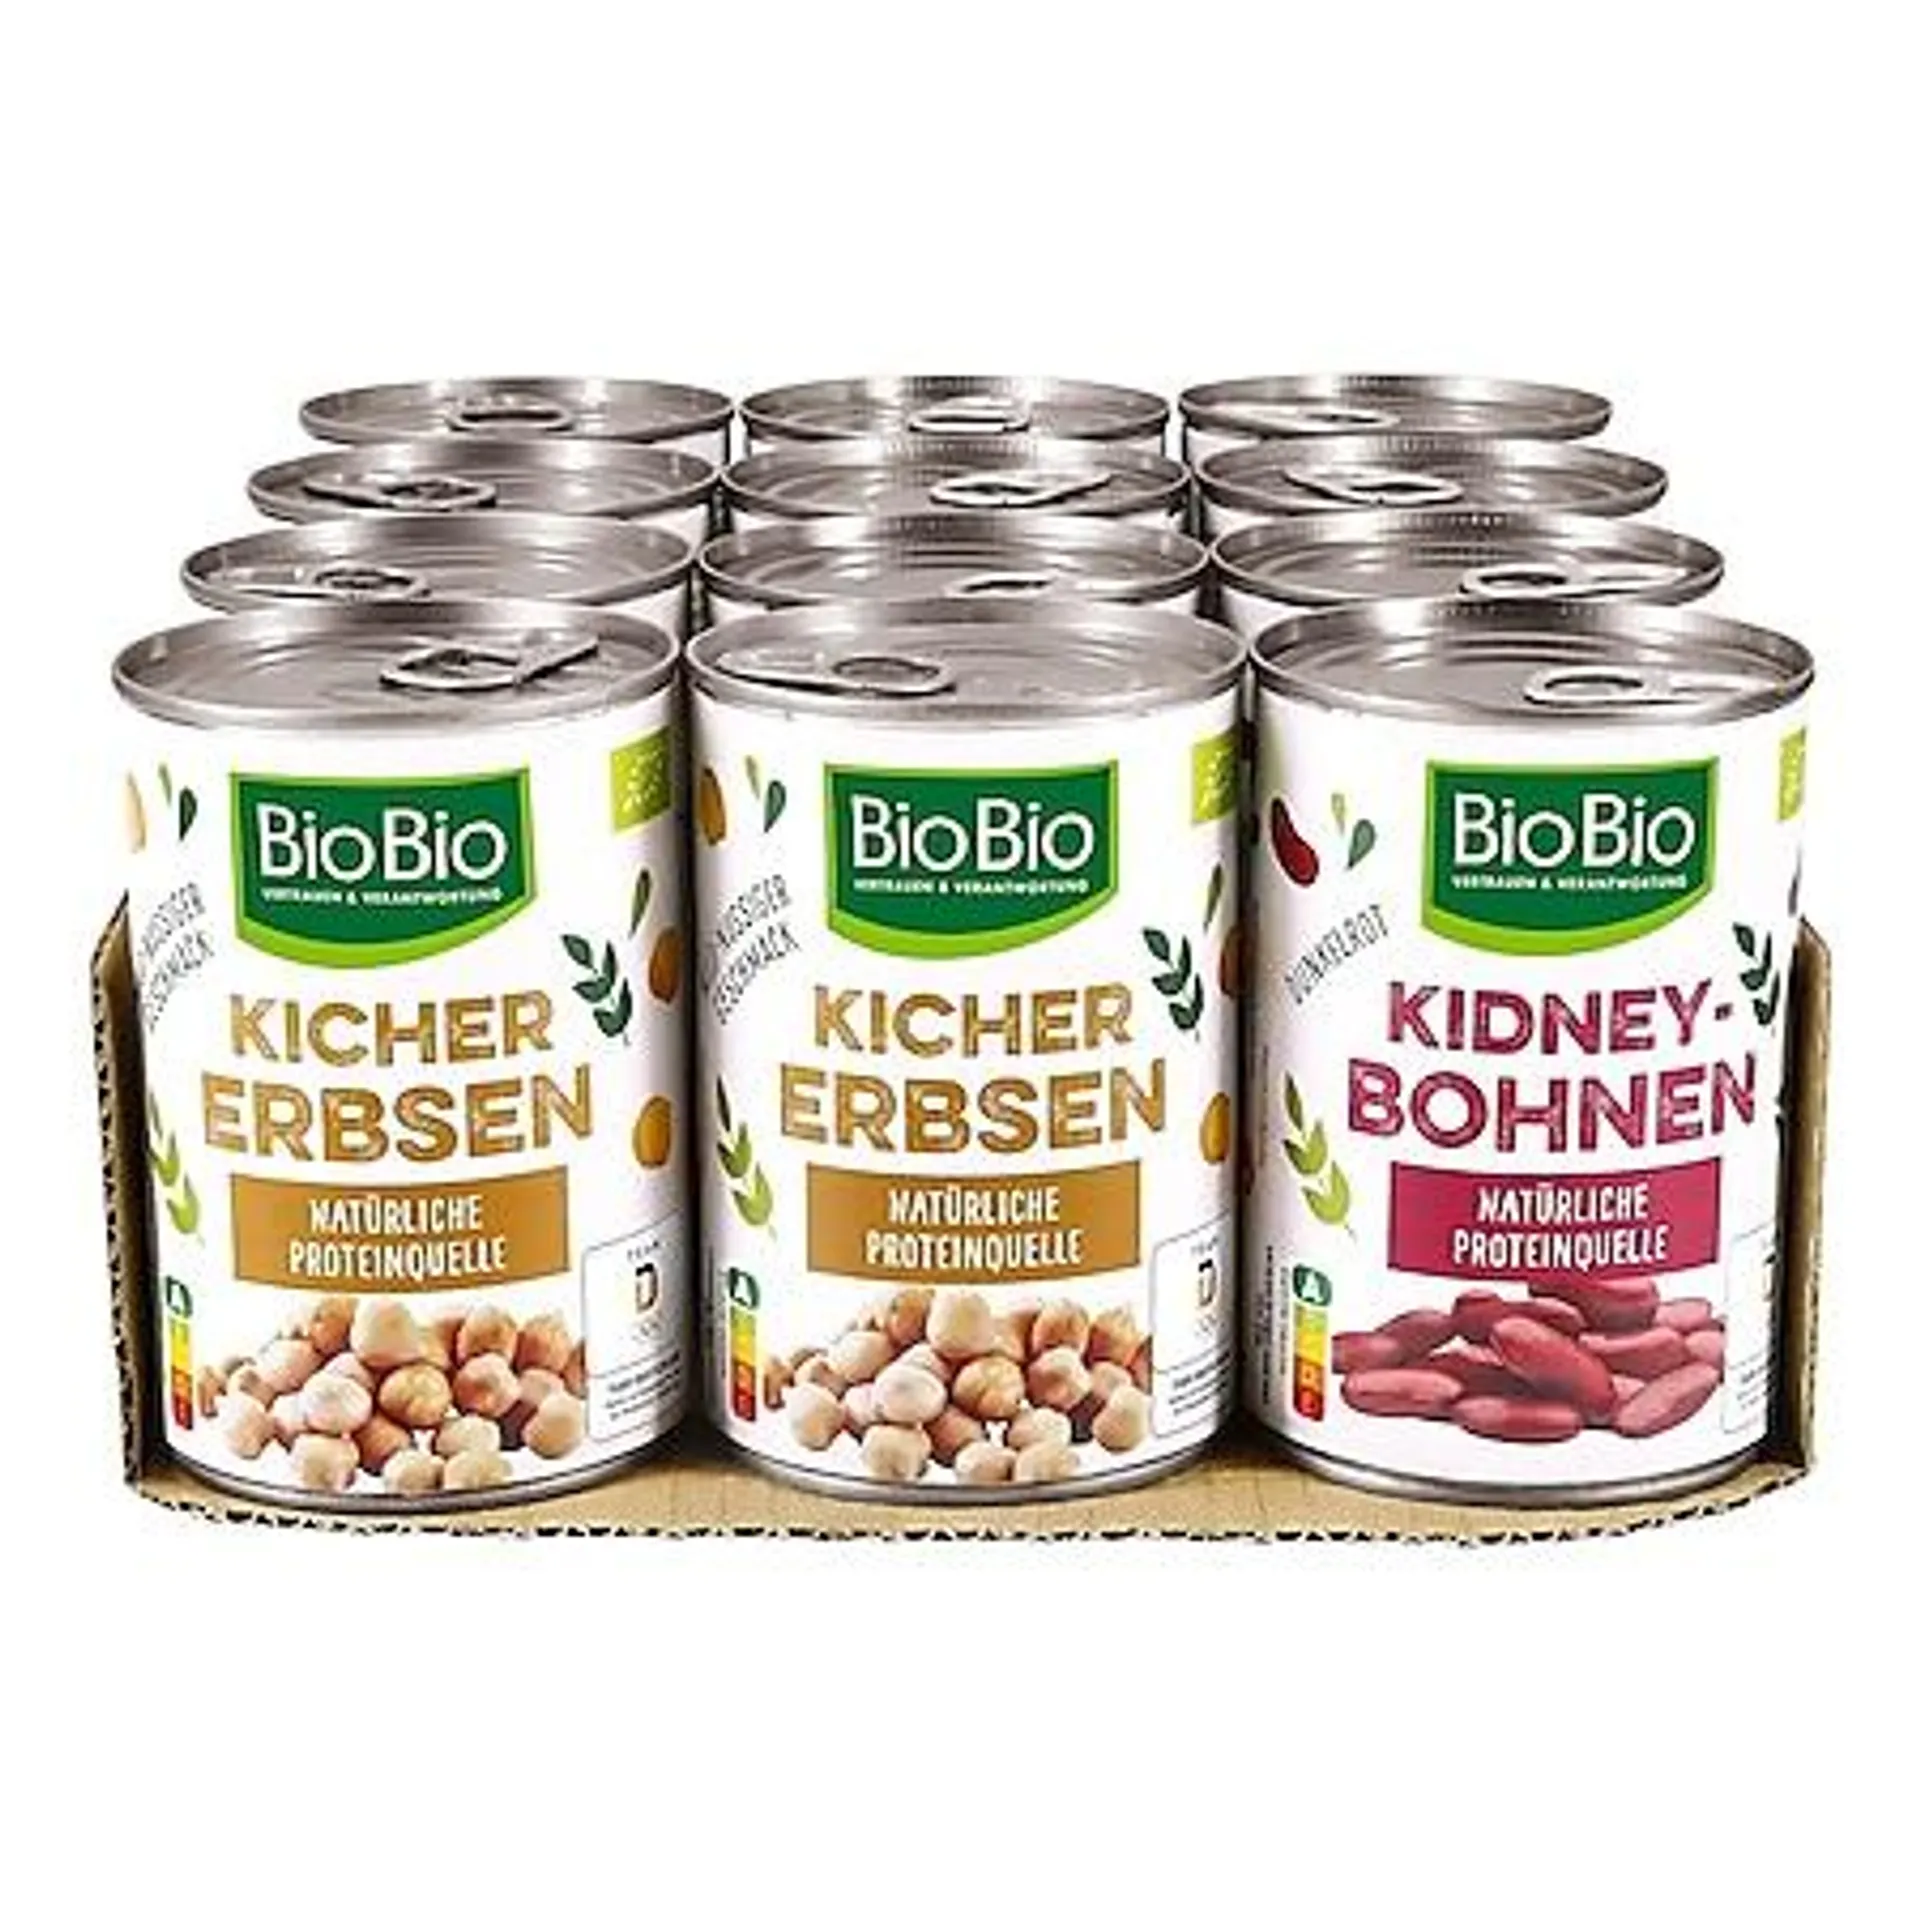 BioBio Hülsenfrüchte 265 g Abtropfgewicht, verschiedene Sorten, 12er Pack